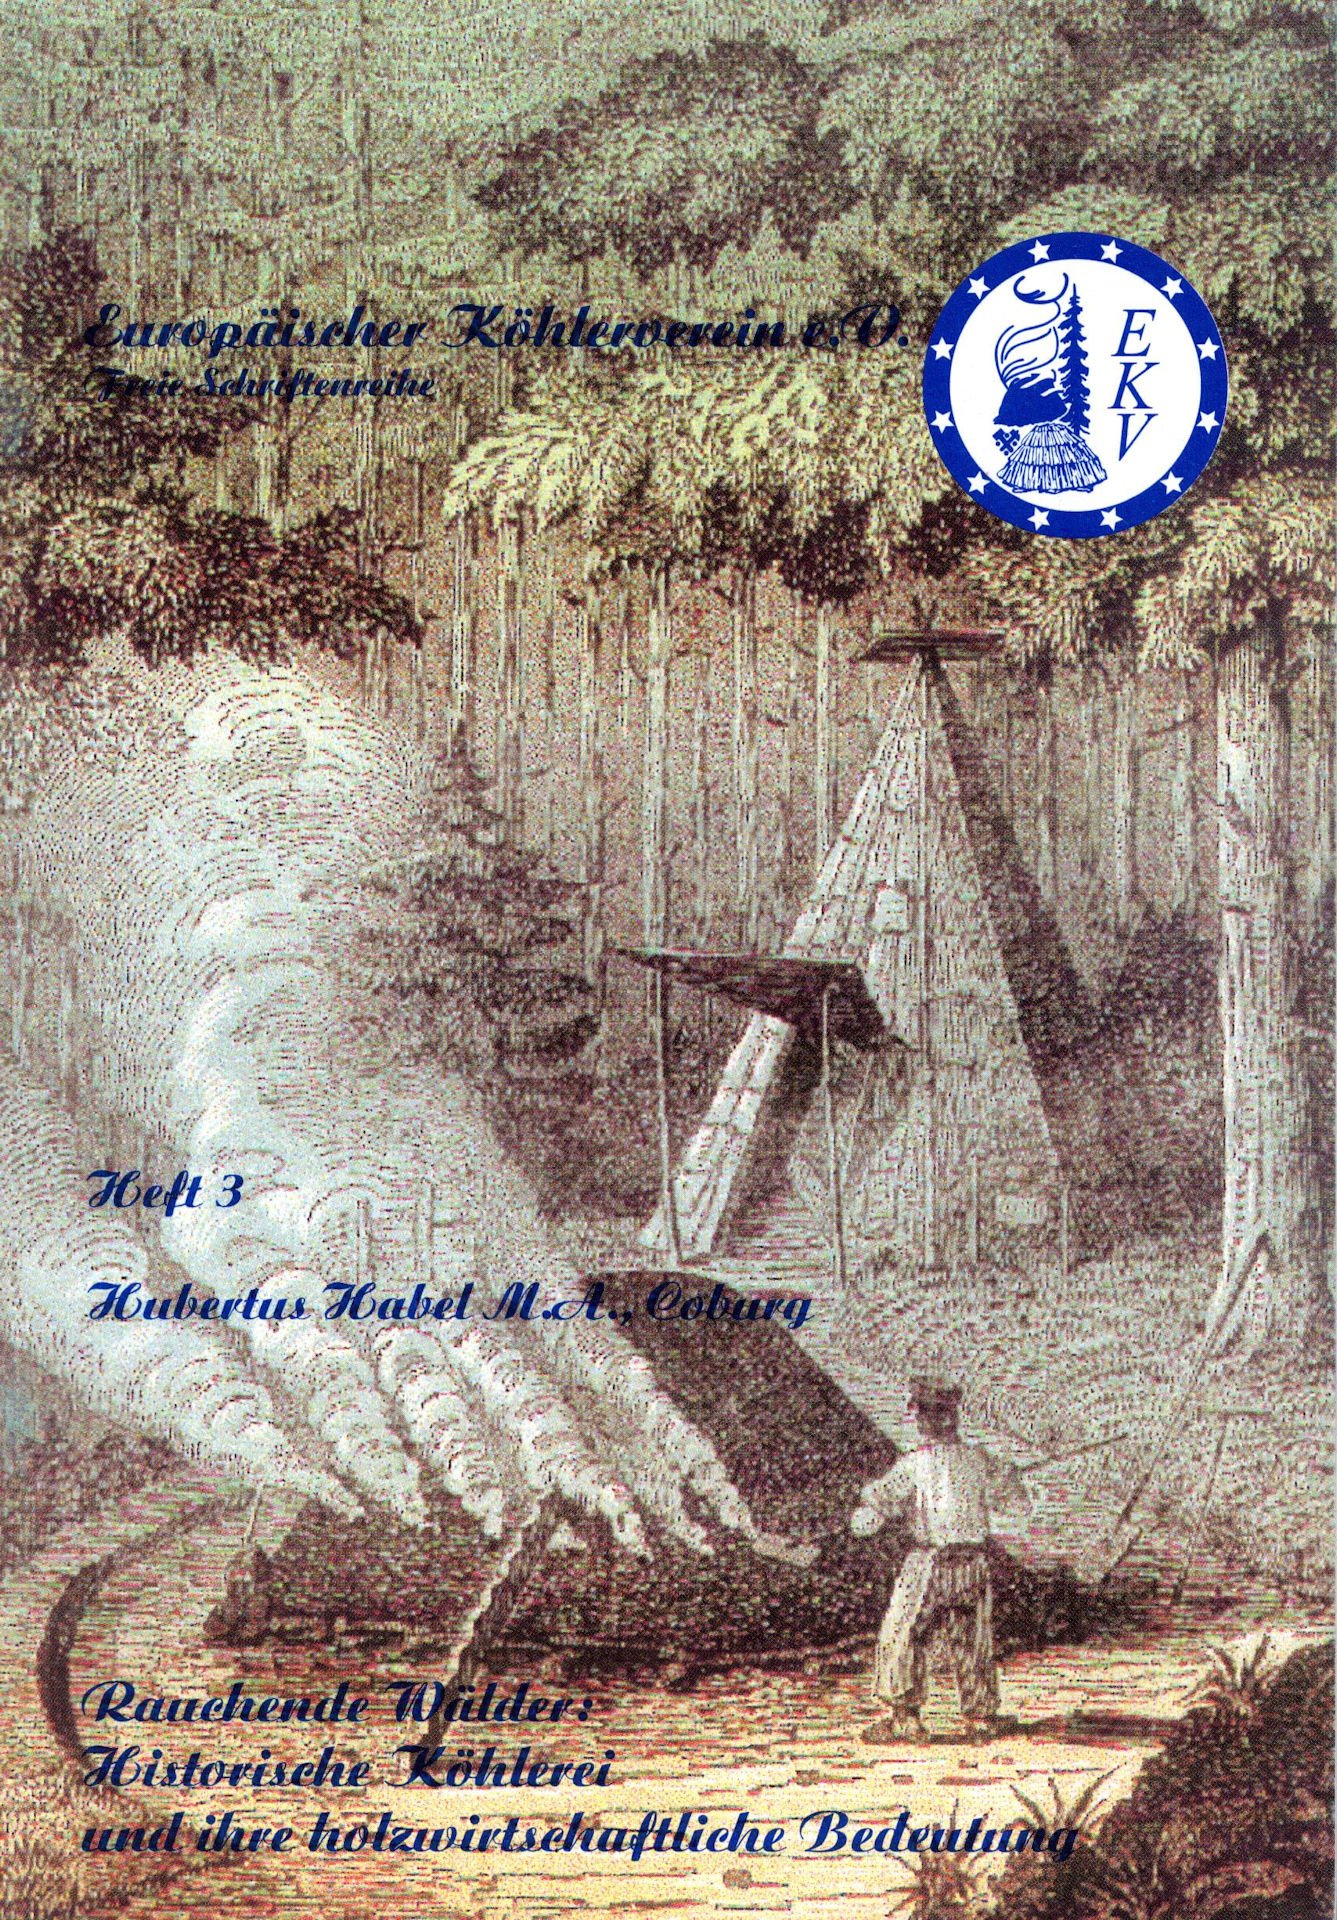 Originaltitel: Heft 3: Hubertus Habel M. A. (Coburg): Rauchende Wälder: Historische Köhlerei und ihre holzwirtschaftliche Bedeutung, Schneeberg 2001; Serie (Saxonia-Freiberg-Stiftung CC BY-NC-SA)